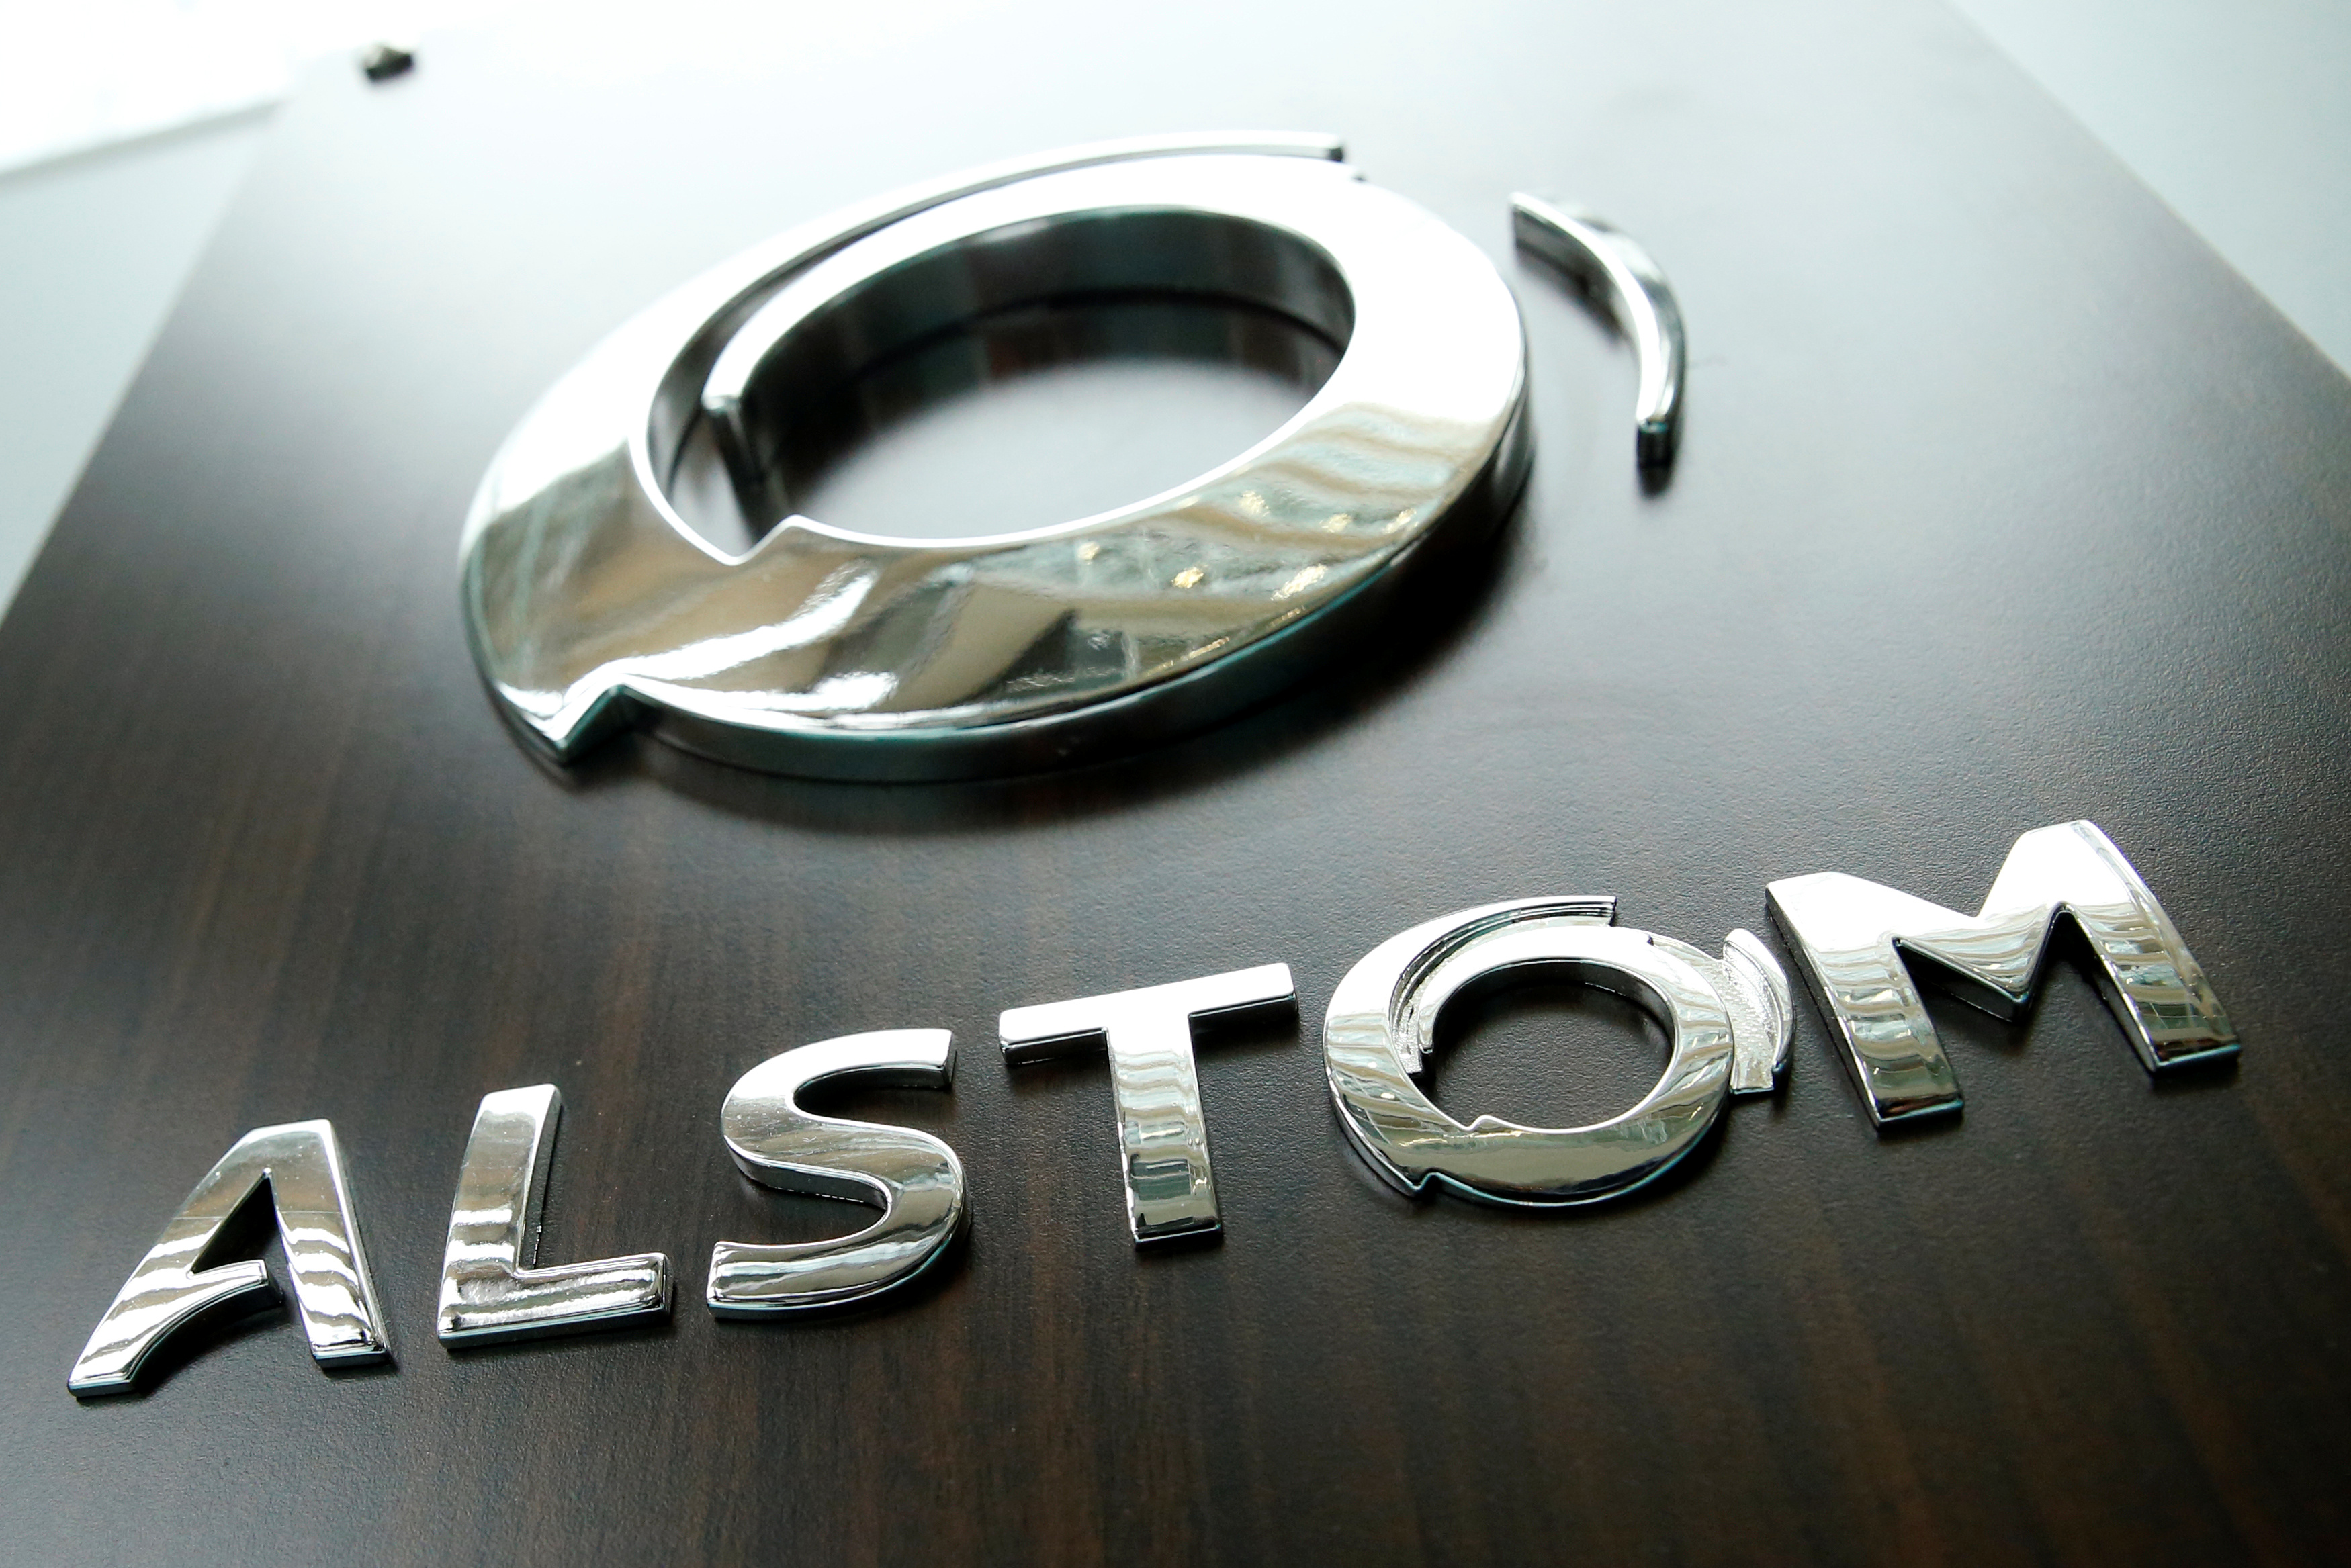 Alstom veut recruter 7.500 personnes cette année, principalement pour ses sites en Europe